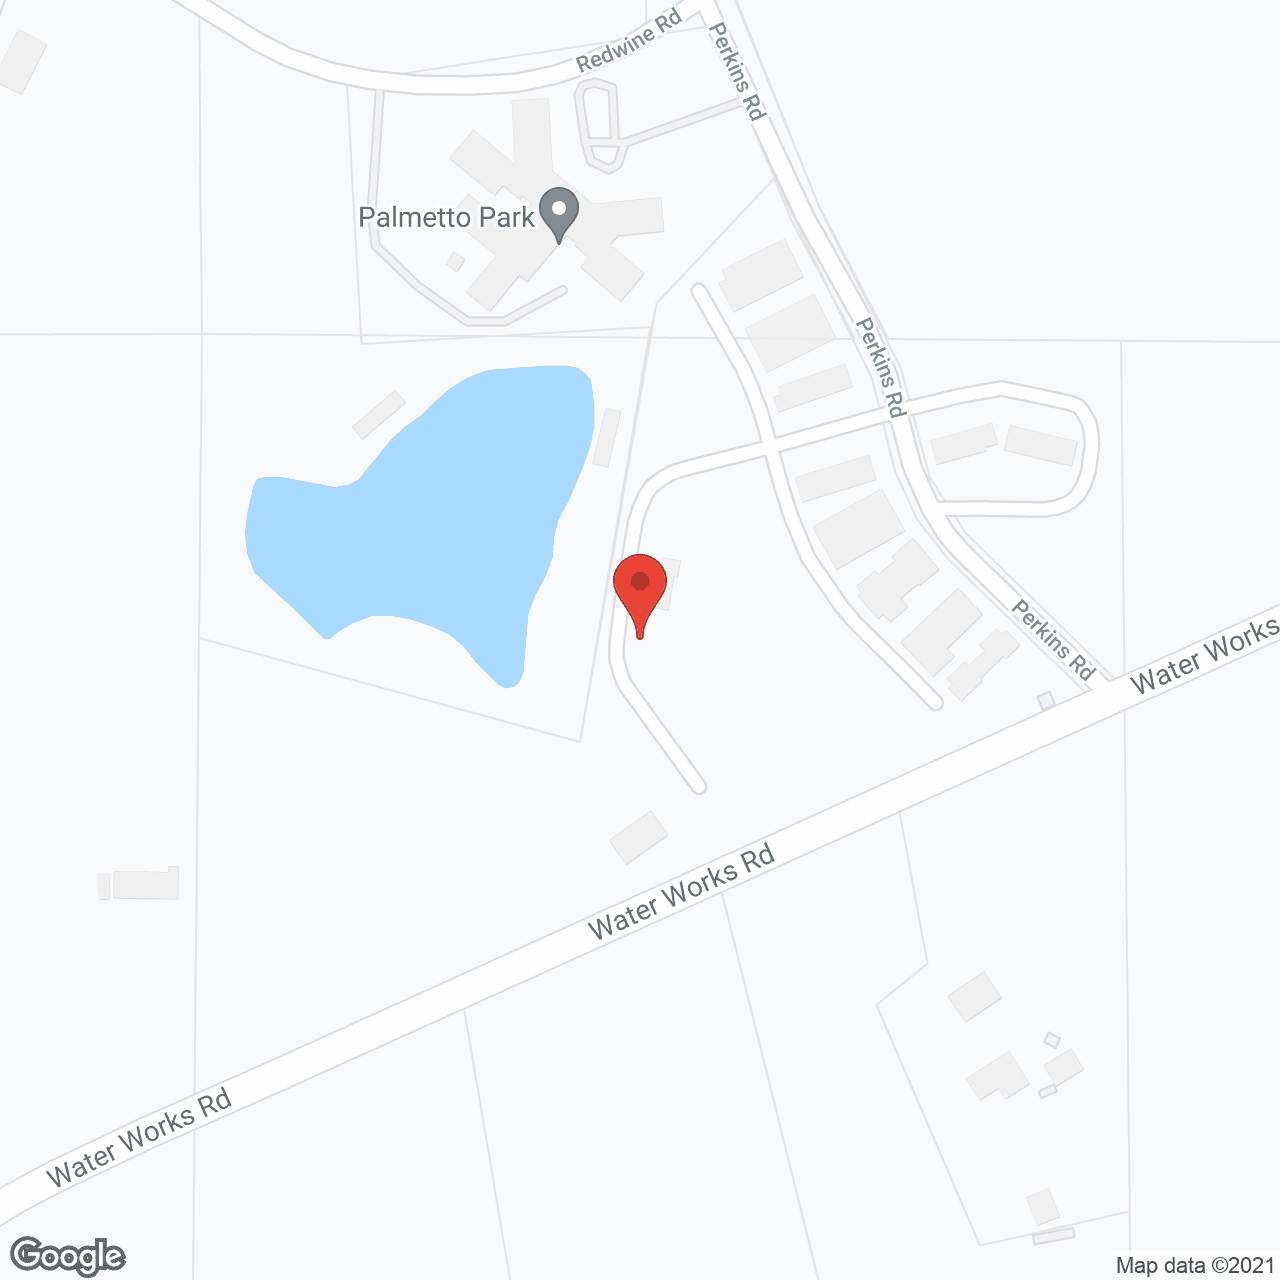 Palmetto Park in google map